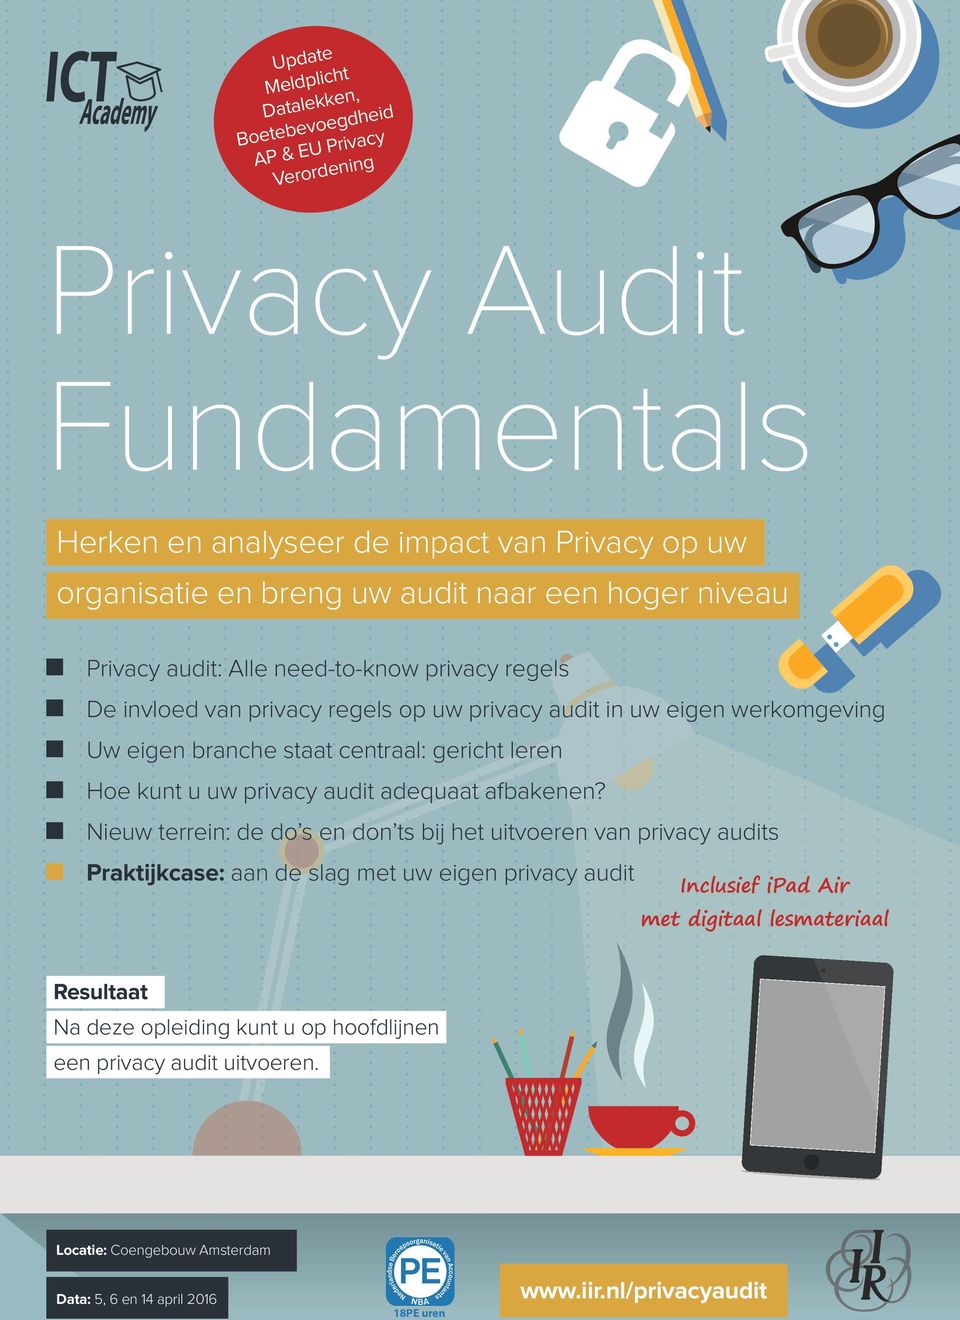 kunt u uw privacy audit adequaat afbakenen?